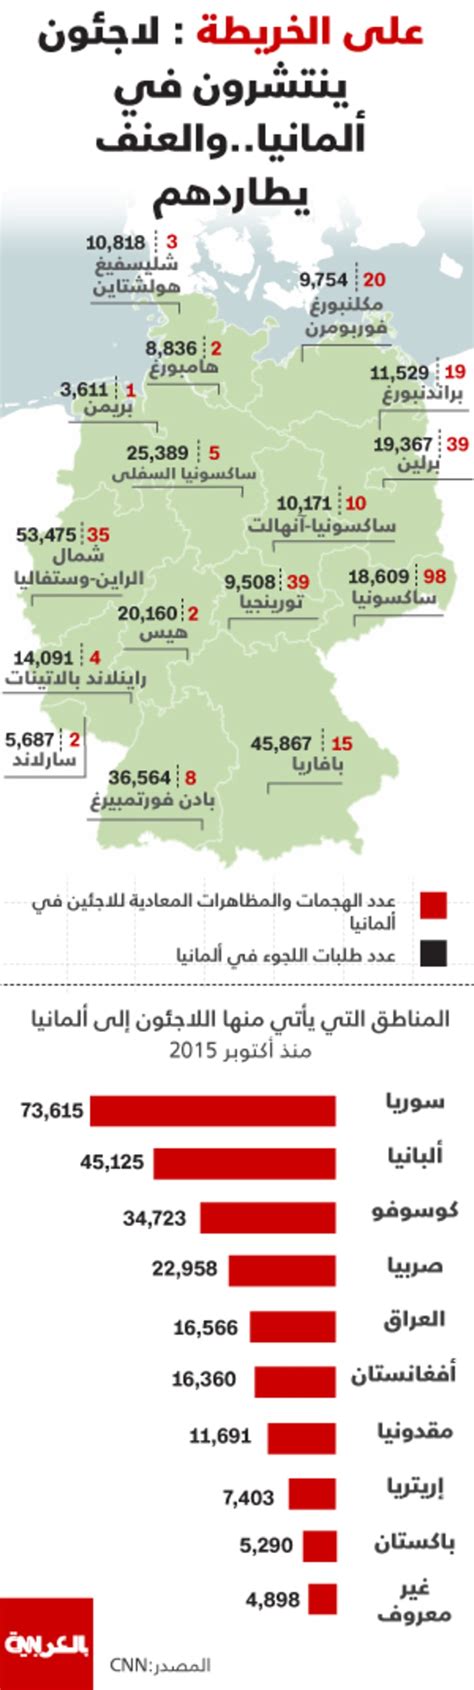 على الخريطة لاجئون ينتشرون في ألمانيا والعنف يطاردهم cnn arabic